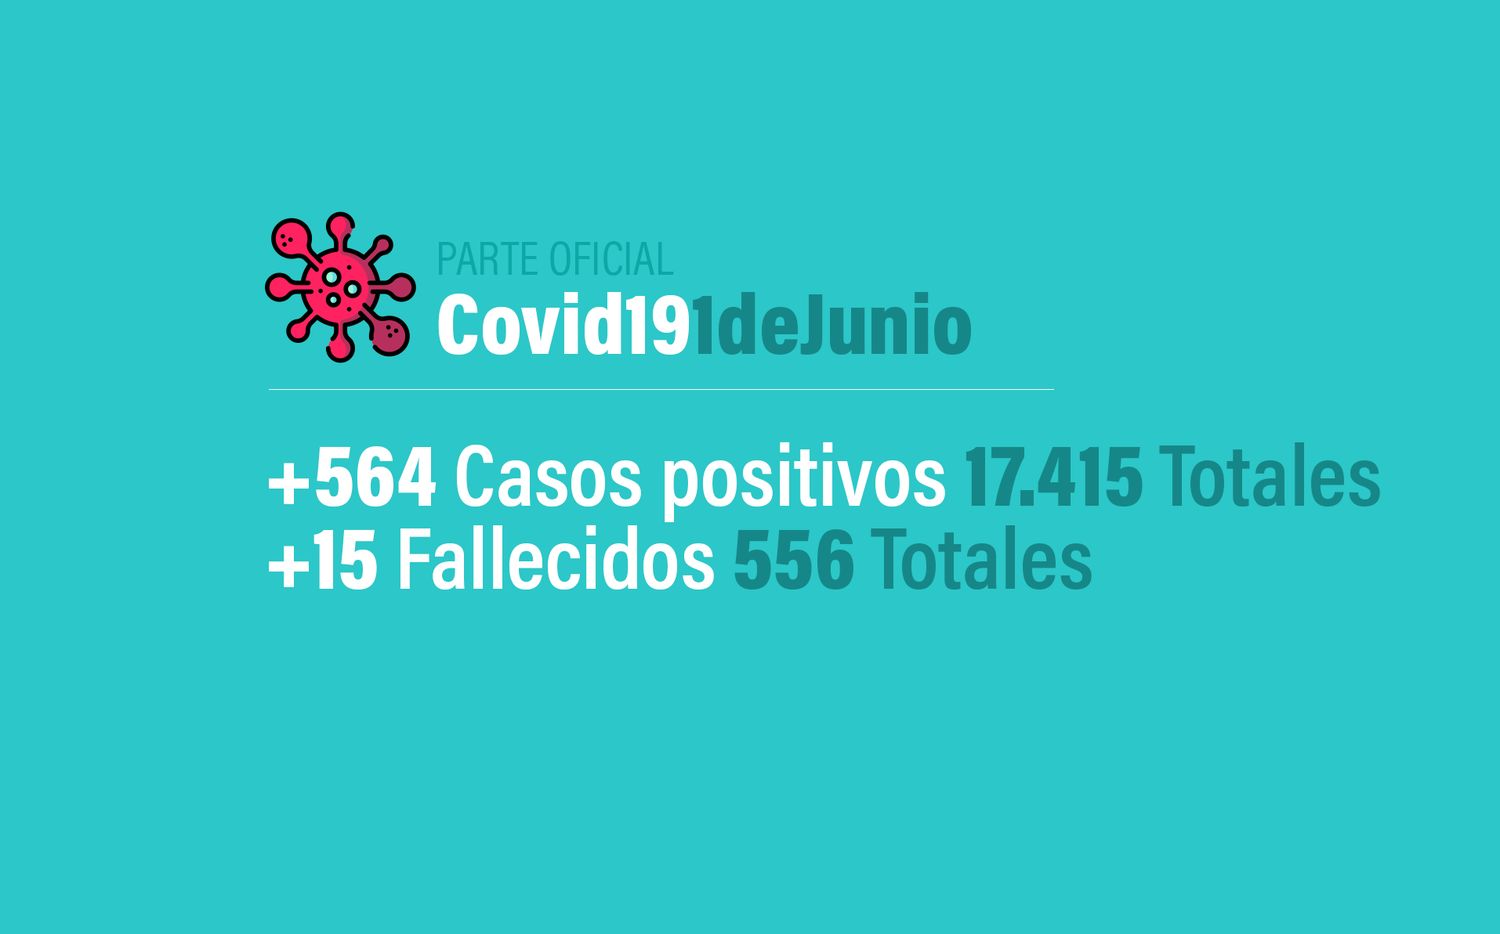 Coronavirus en Argentina: 564 nuevos casos, 17415 confirmados y 556 muertes, al 1 de junio